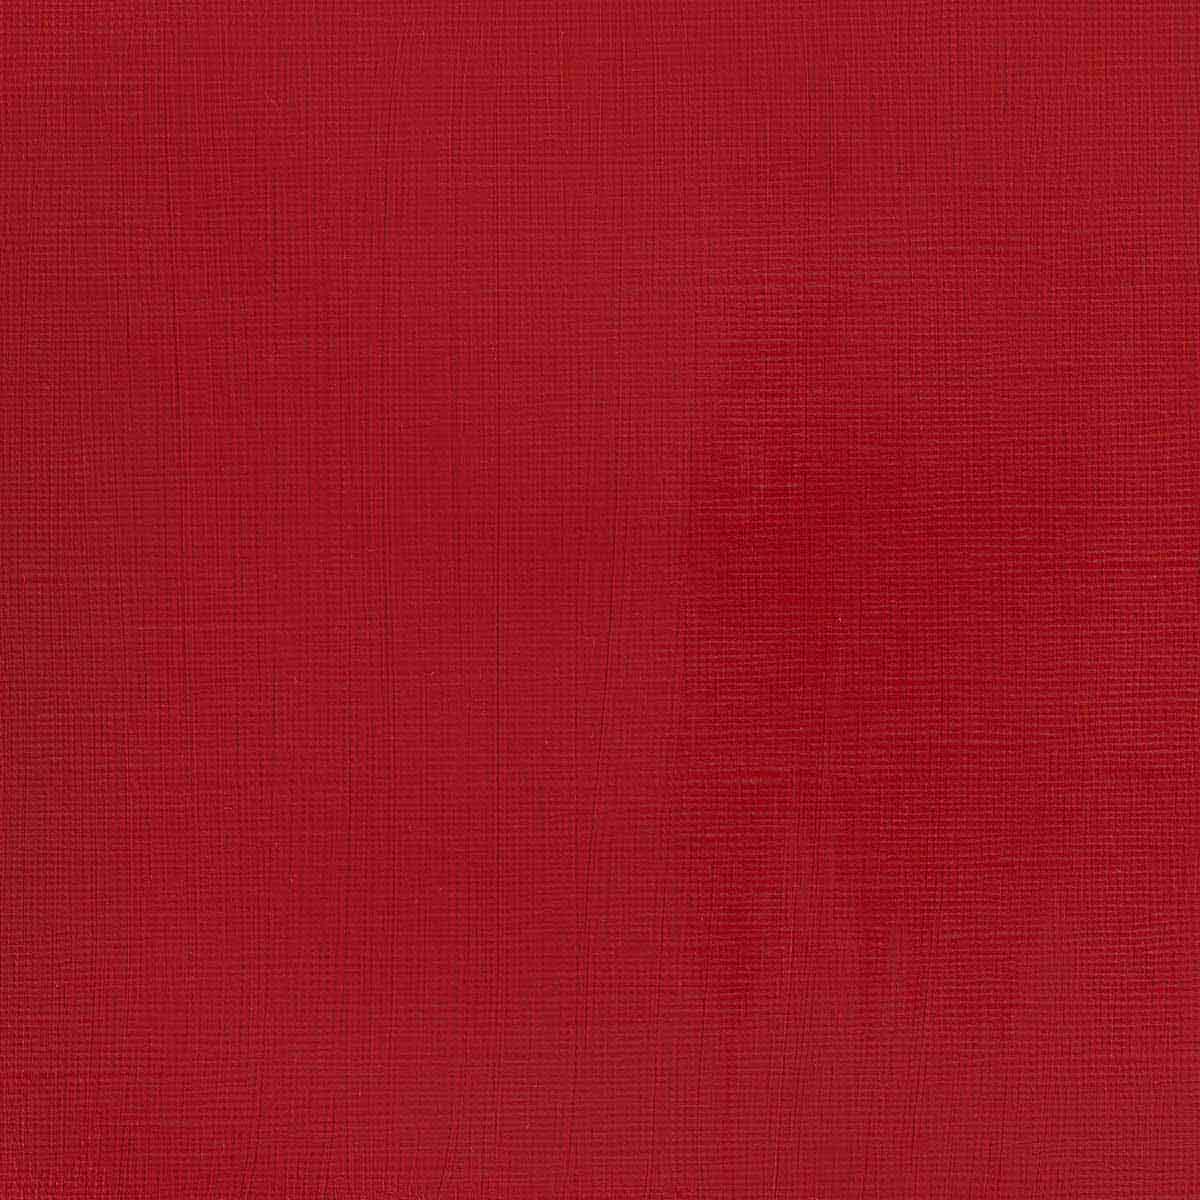 Winsor en Newton - Acryl -kleur van professionele artiesten - 60 ml - Cadmium Red Deep